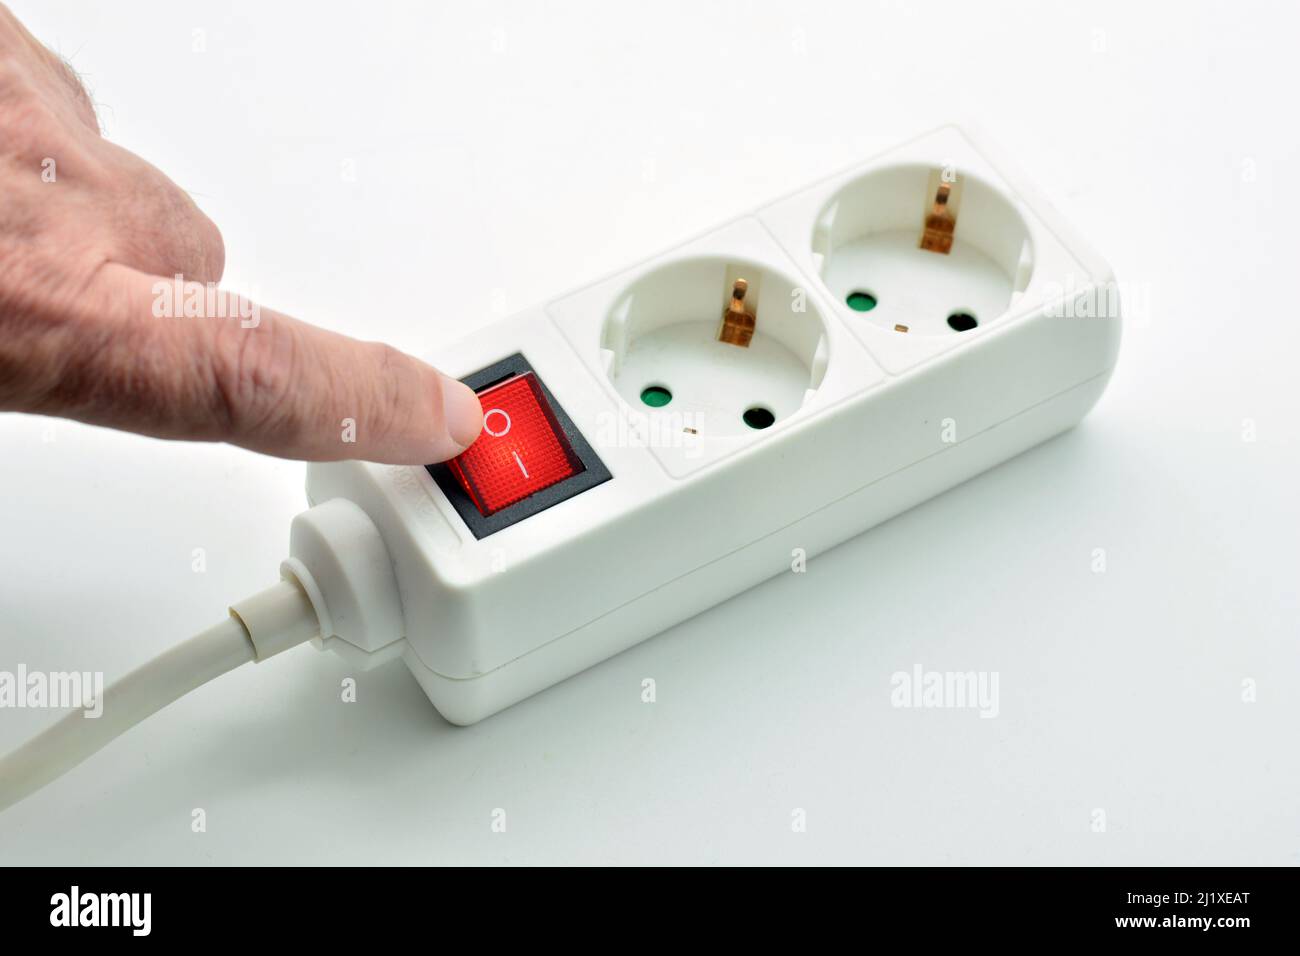 Dedo apagando un interruptor de una regleta eléctrica endido, aislado sobre fondo blanco Foto Stock